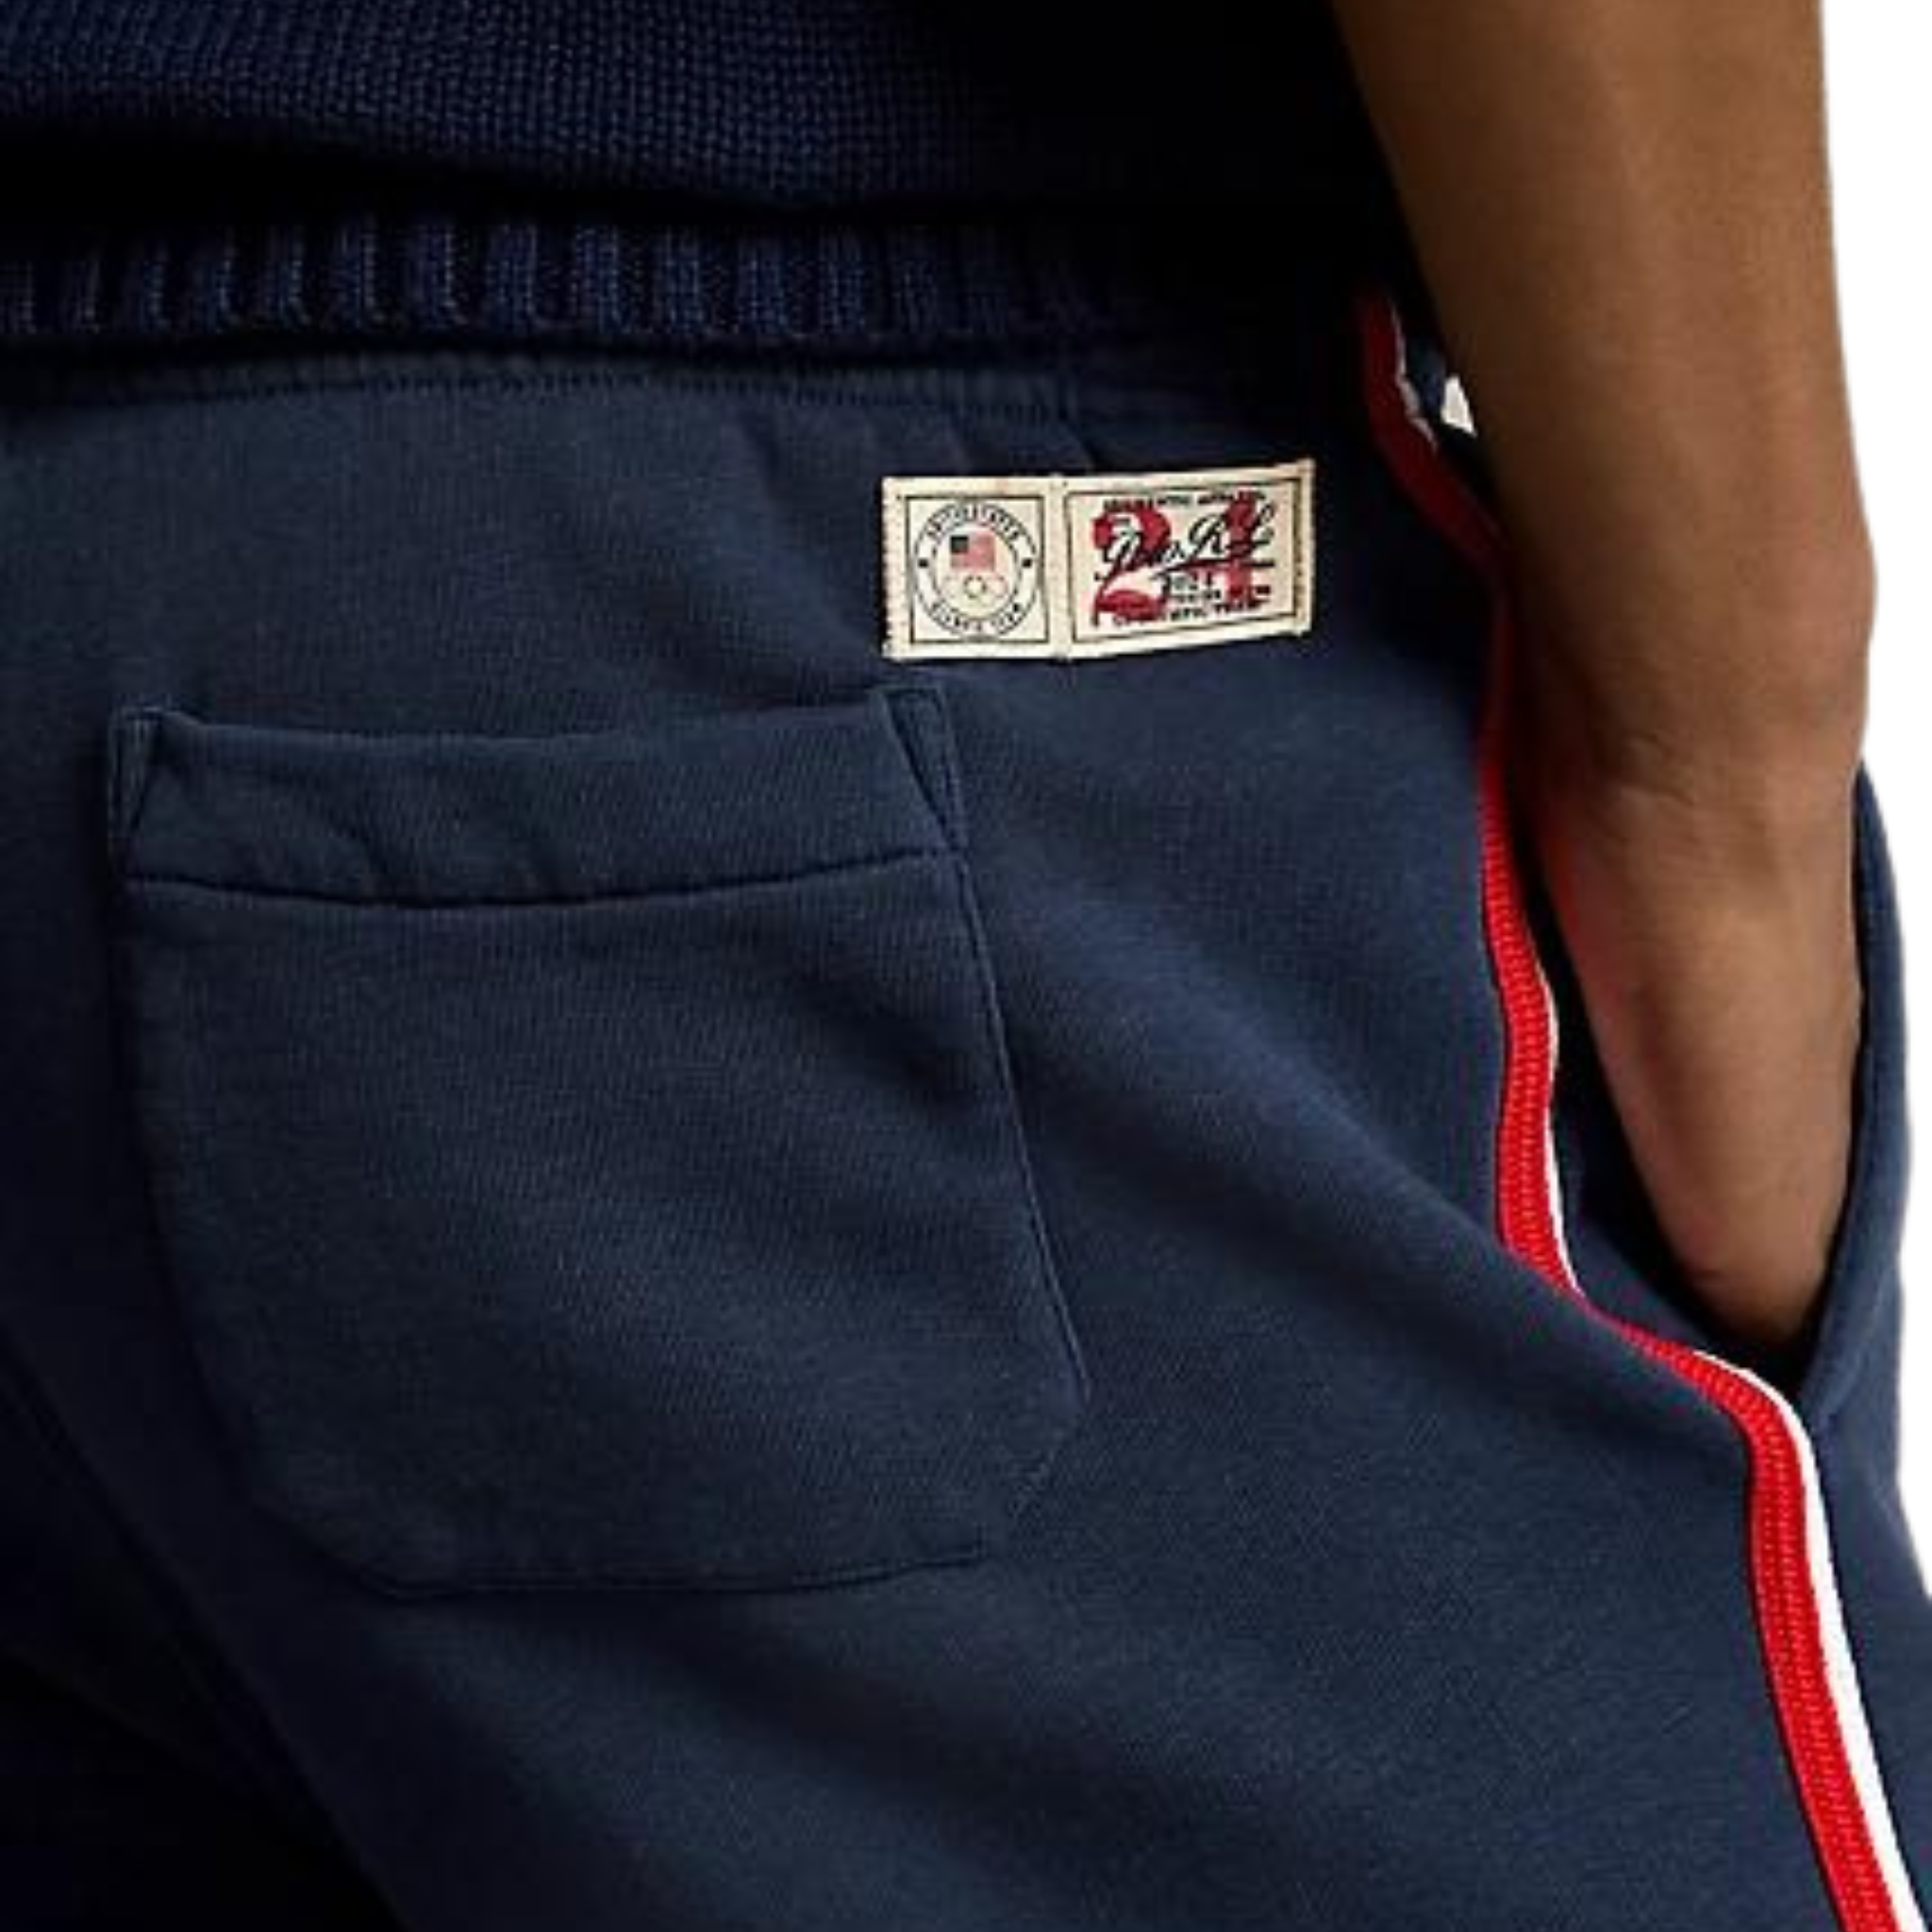 Polo Ralph Lauren Team USA Sweatpants (Navy) - Polo Ralph Lauren